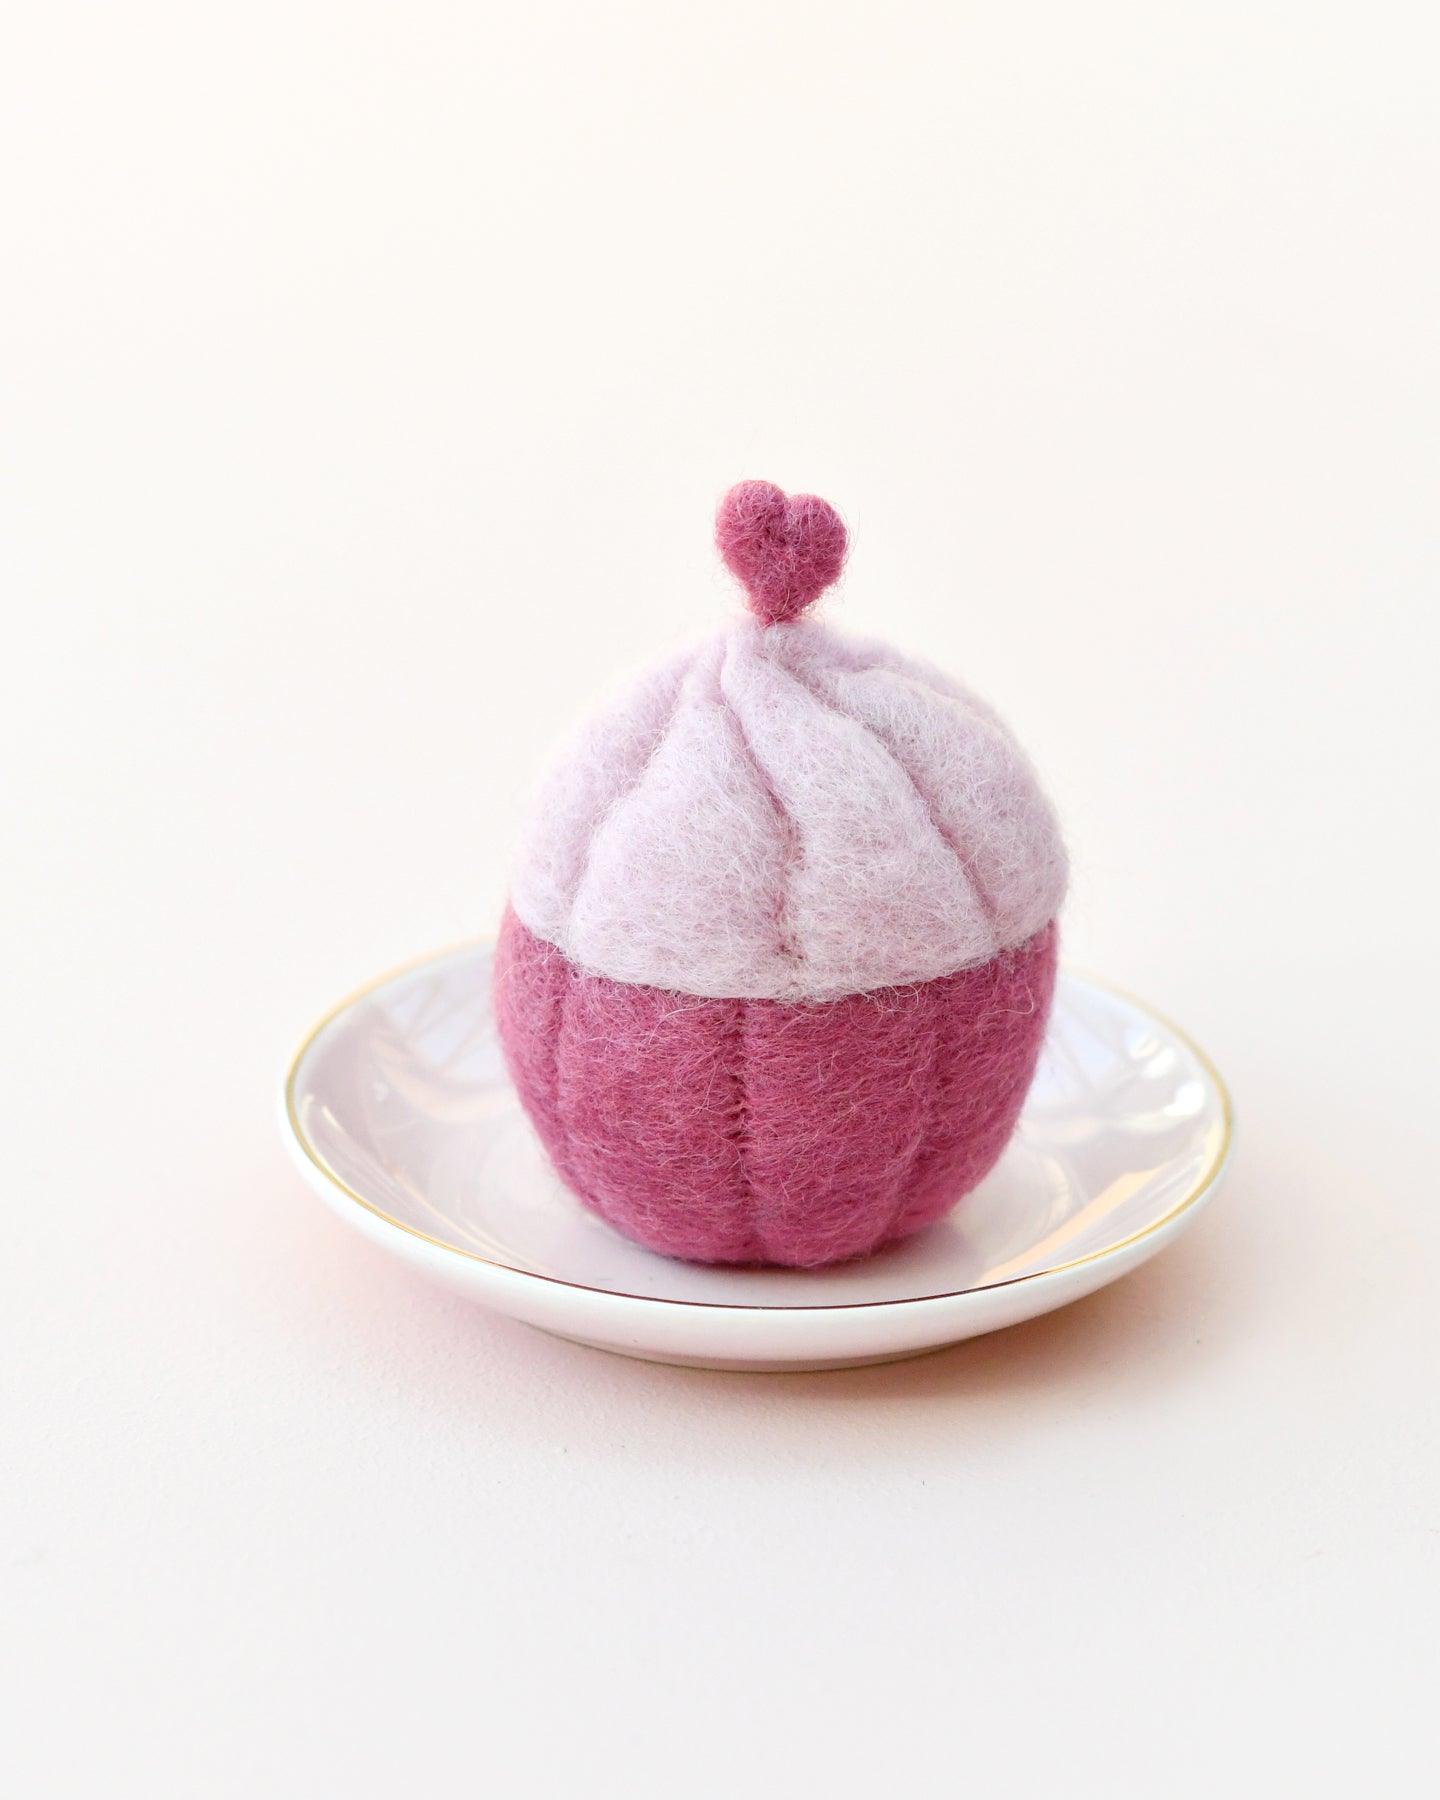 Felt Cupcake - Pink Heart